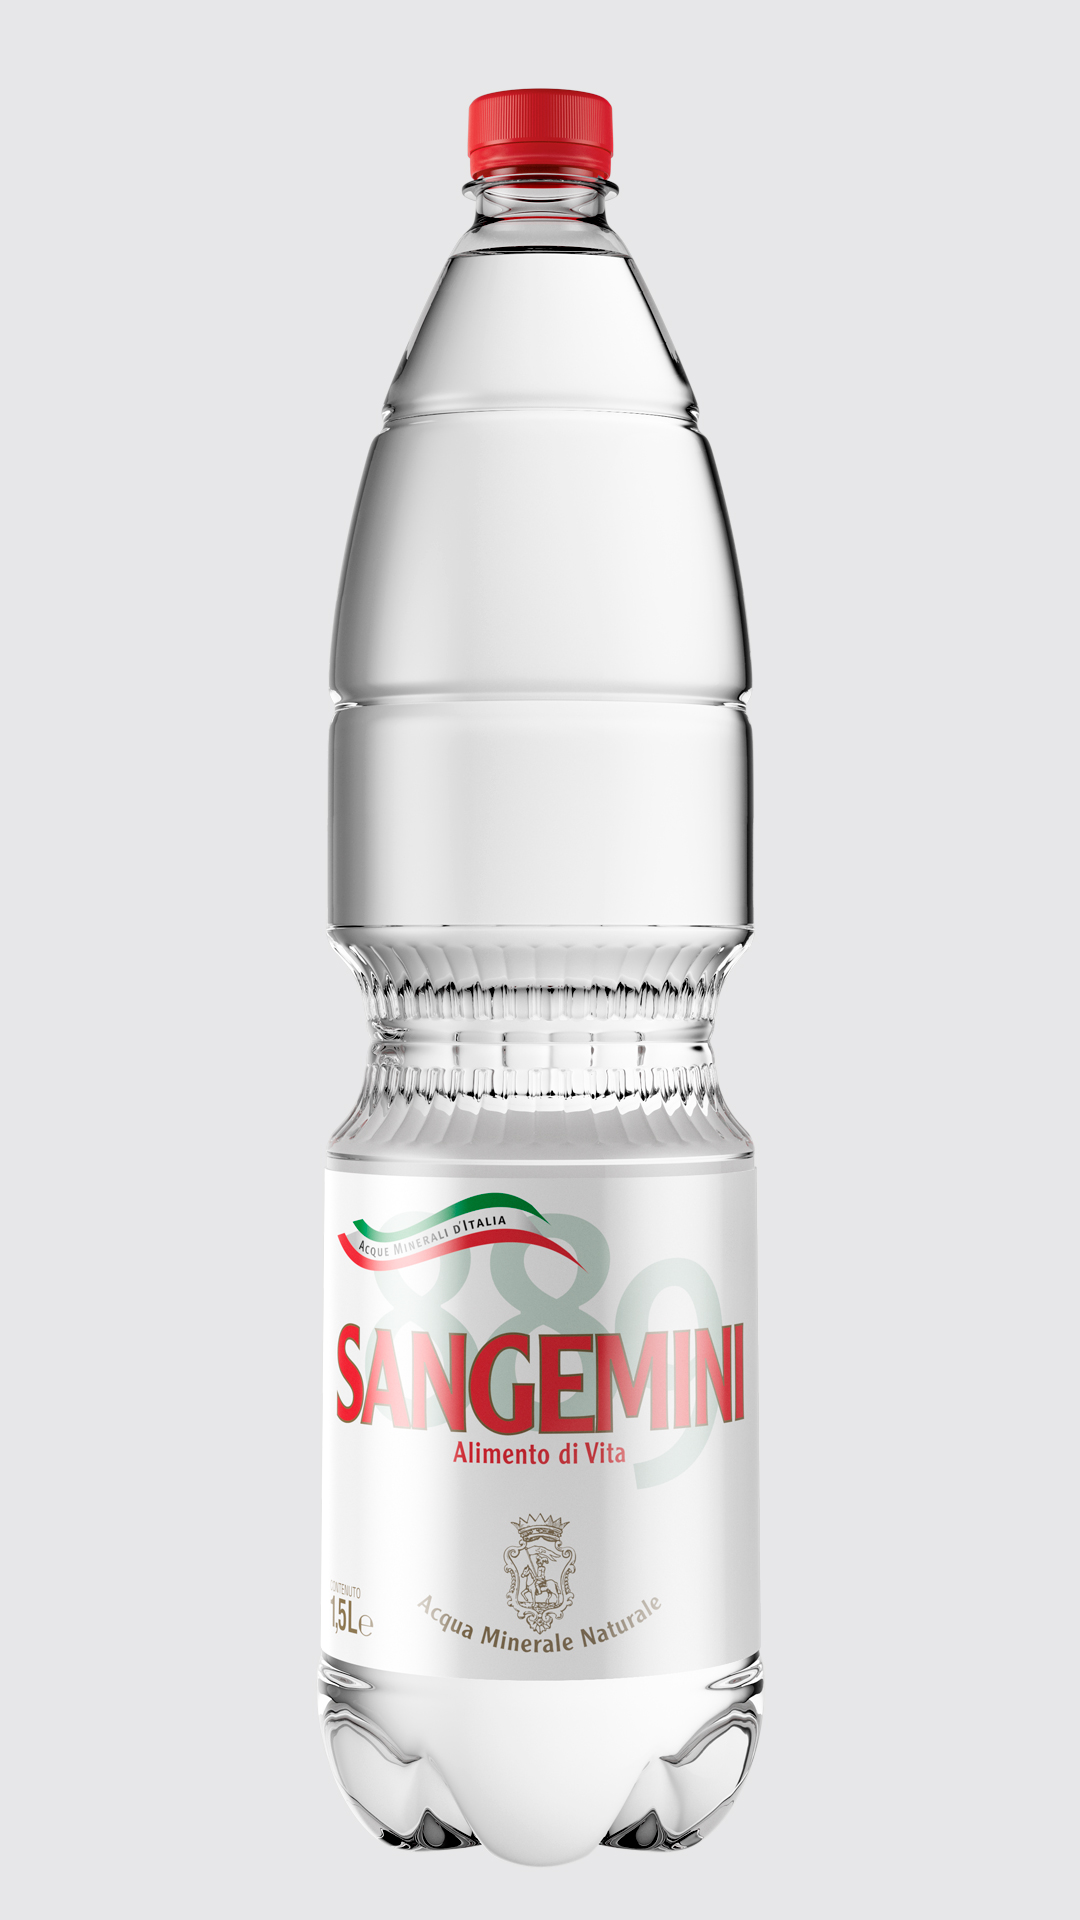 Sangemini Restyling Rossetti Brand Design old bottle